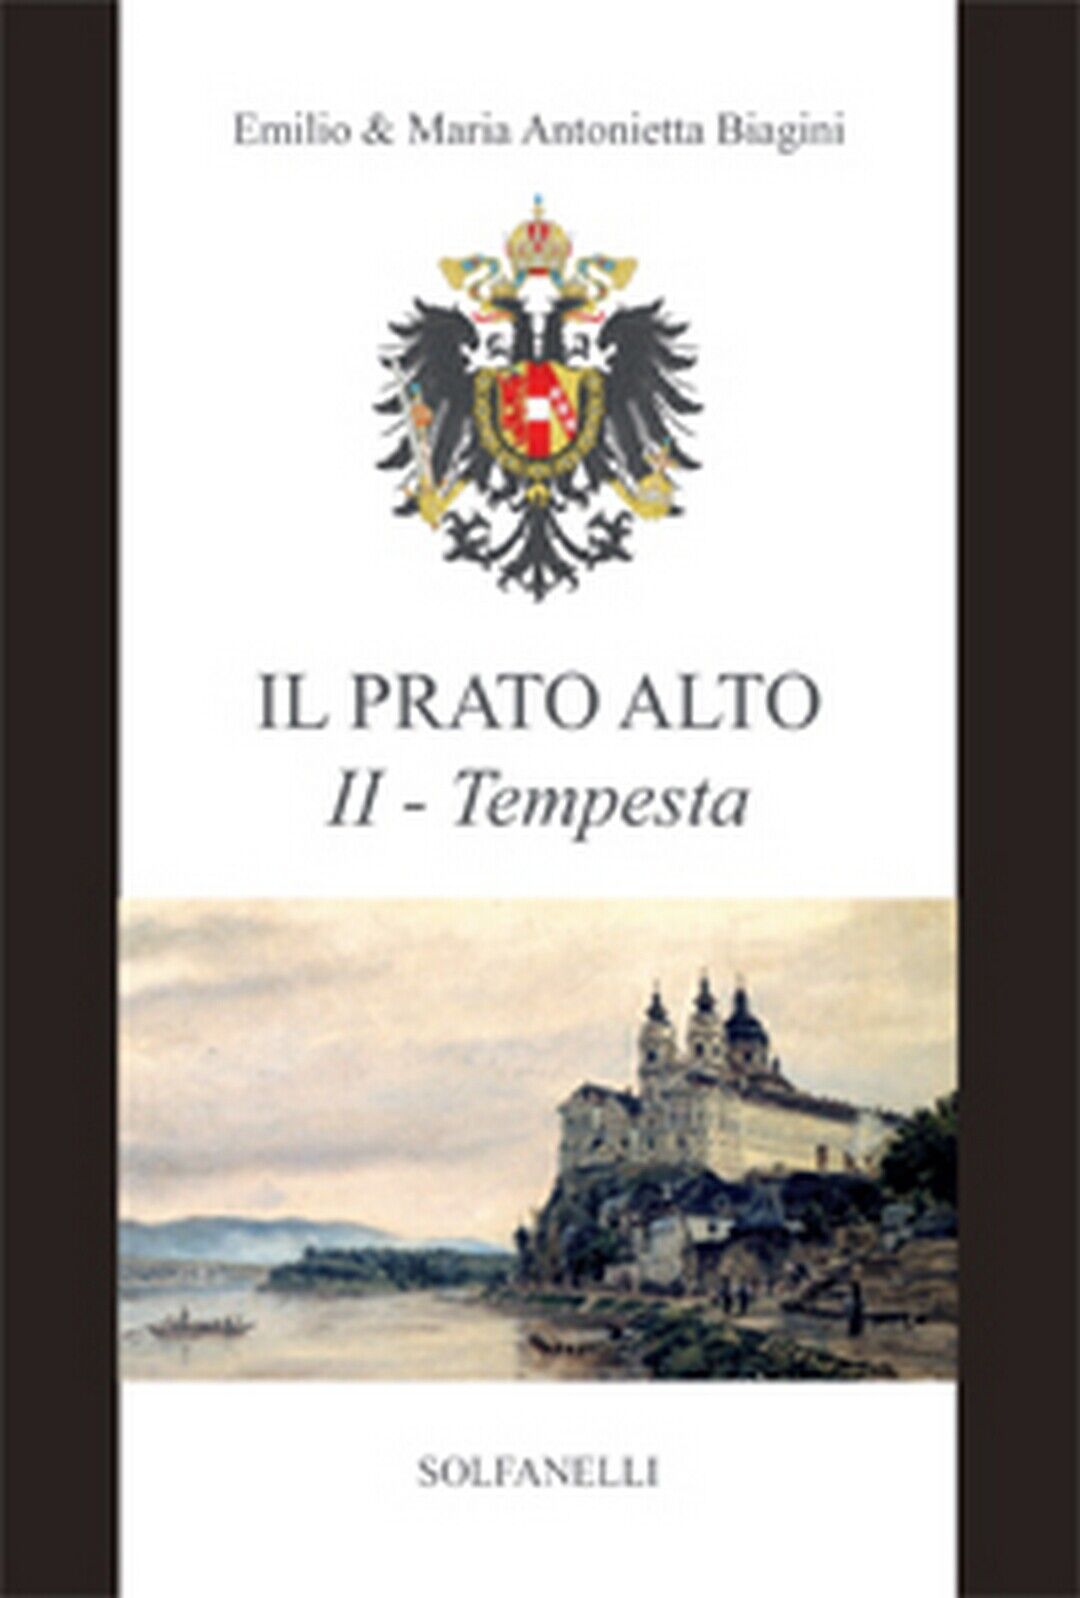 IL PRATO ALTO II Tempesta dal 1246 al 1683  di Emilio E Maria Antonietta Biagini libro usato